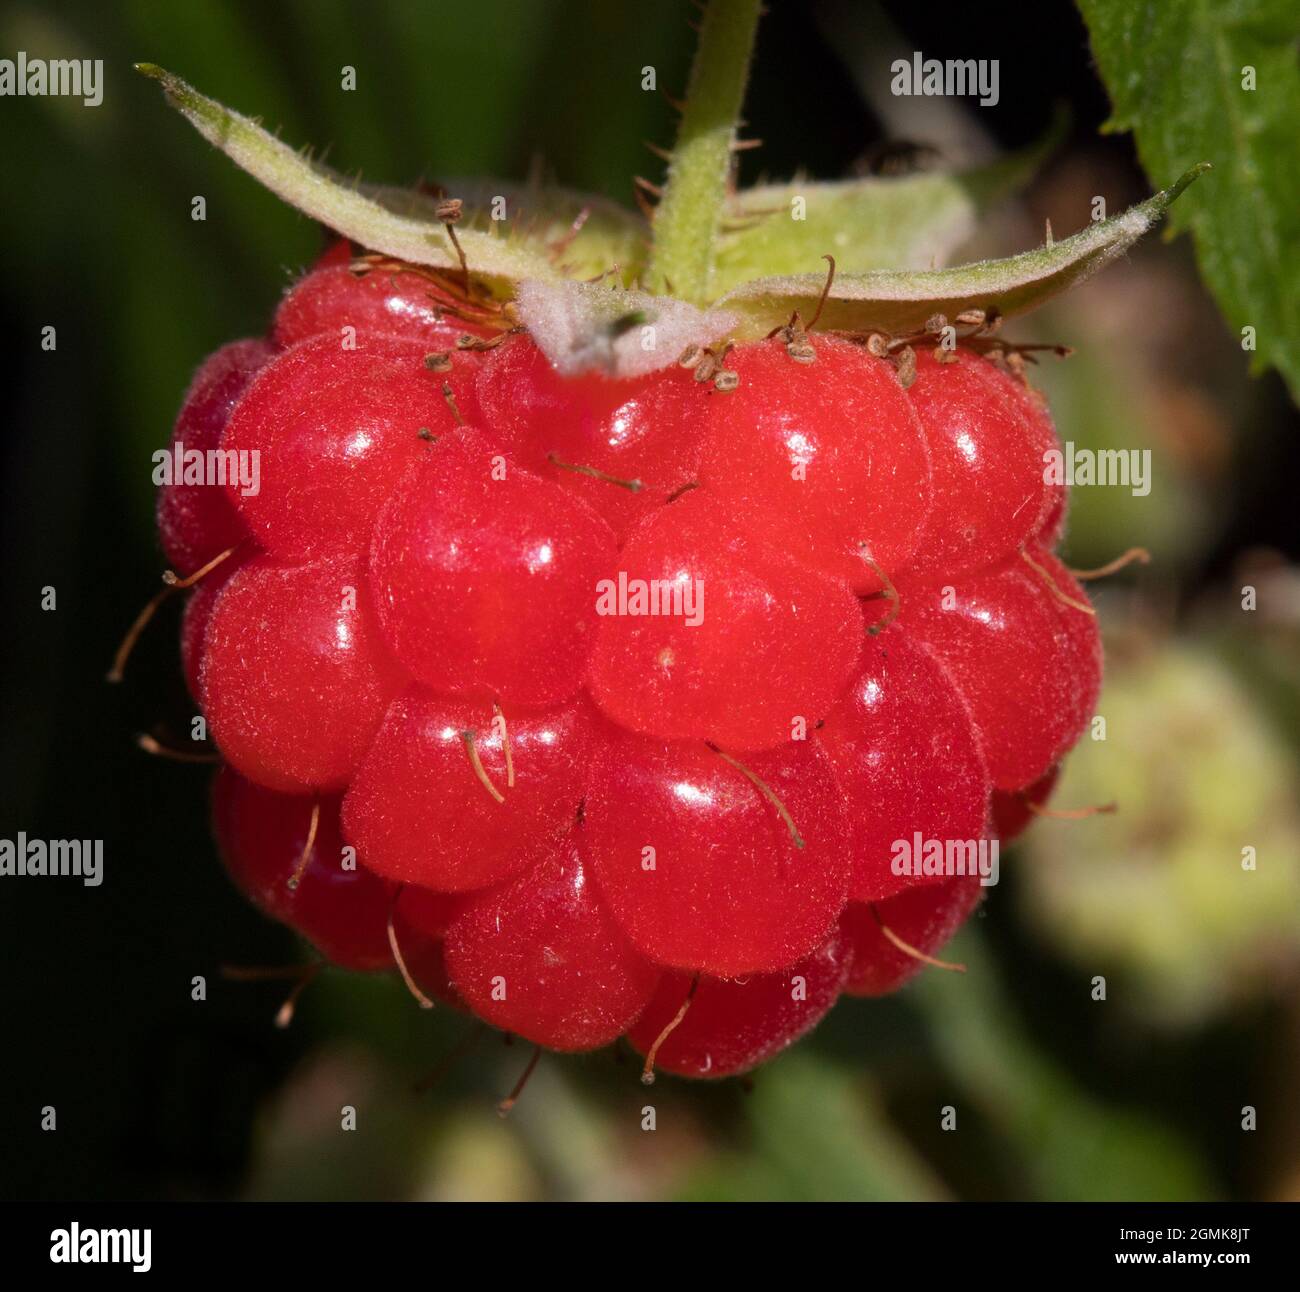 Raspberry on the Vine Stock Photo